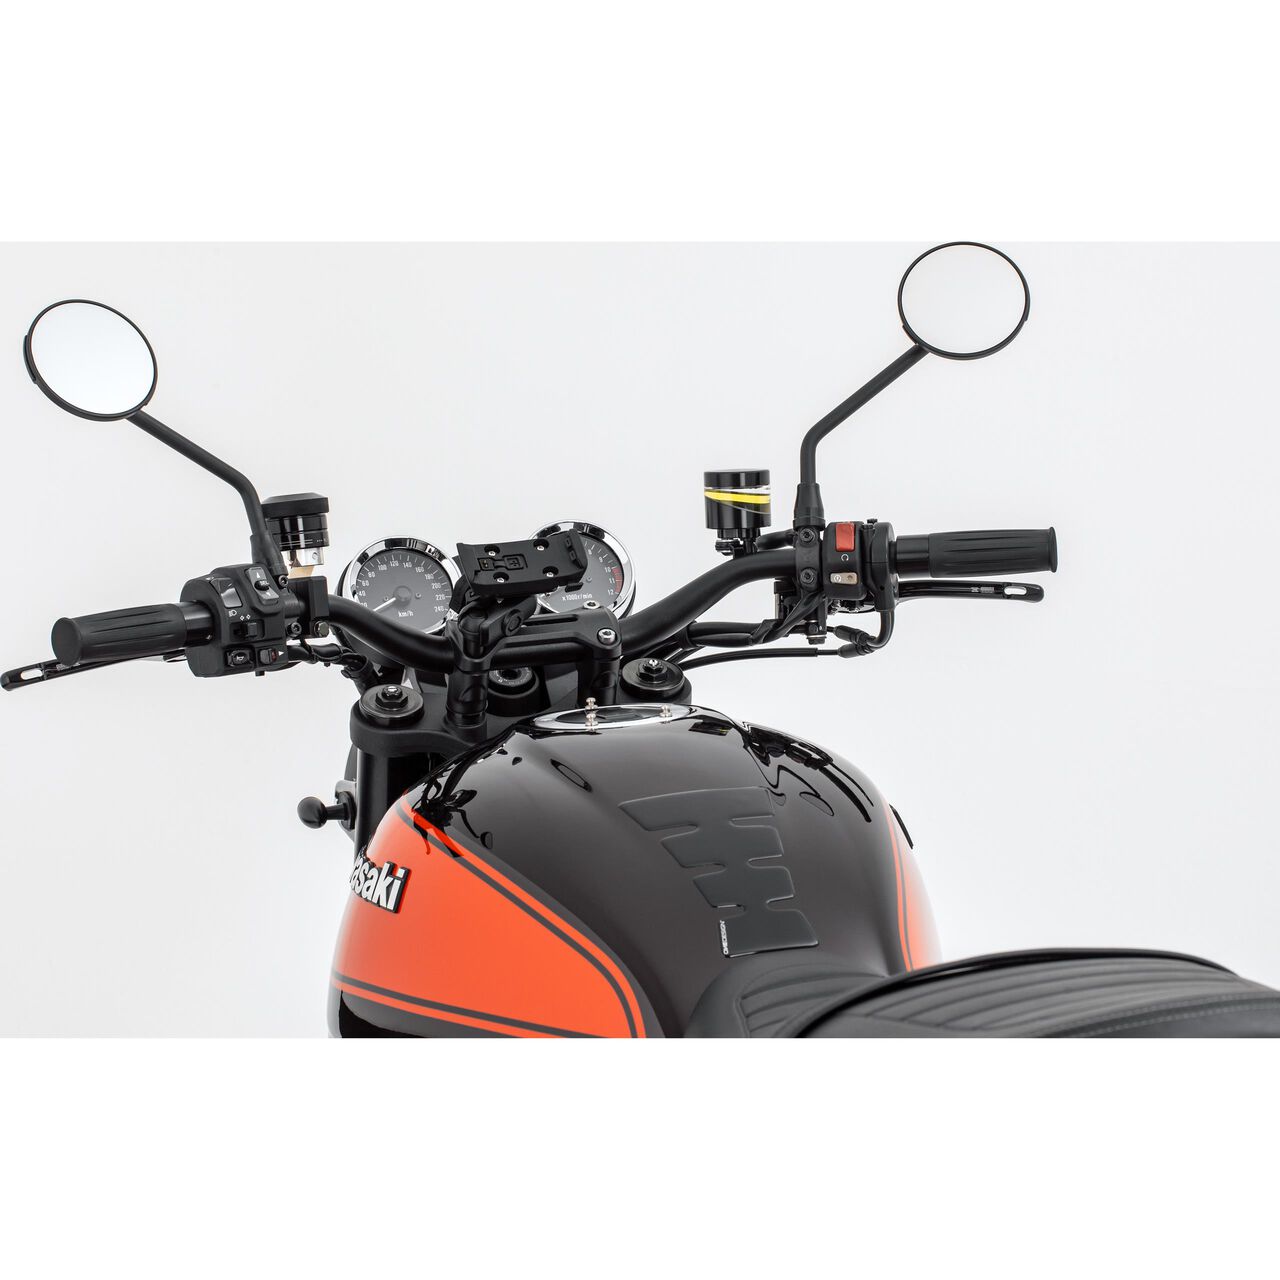 Motorrad Navi- & Smartphonehalter kaufen – POLO Motorrad